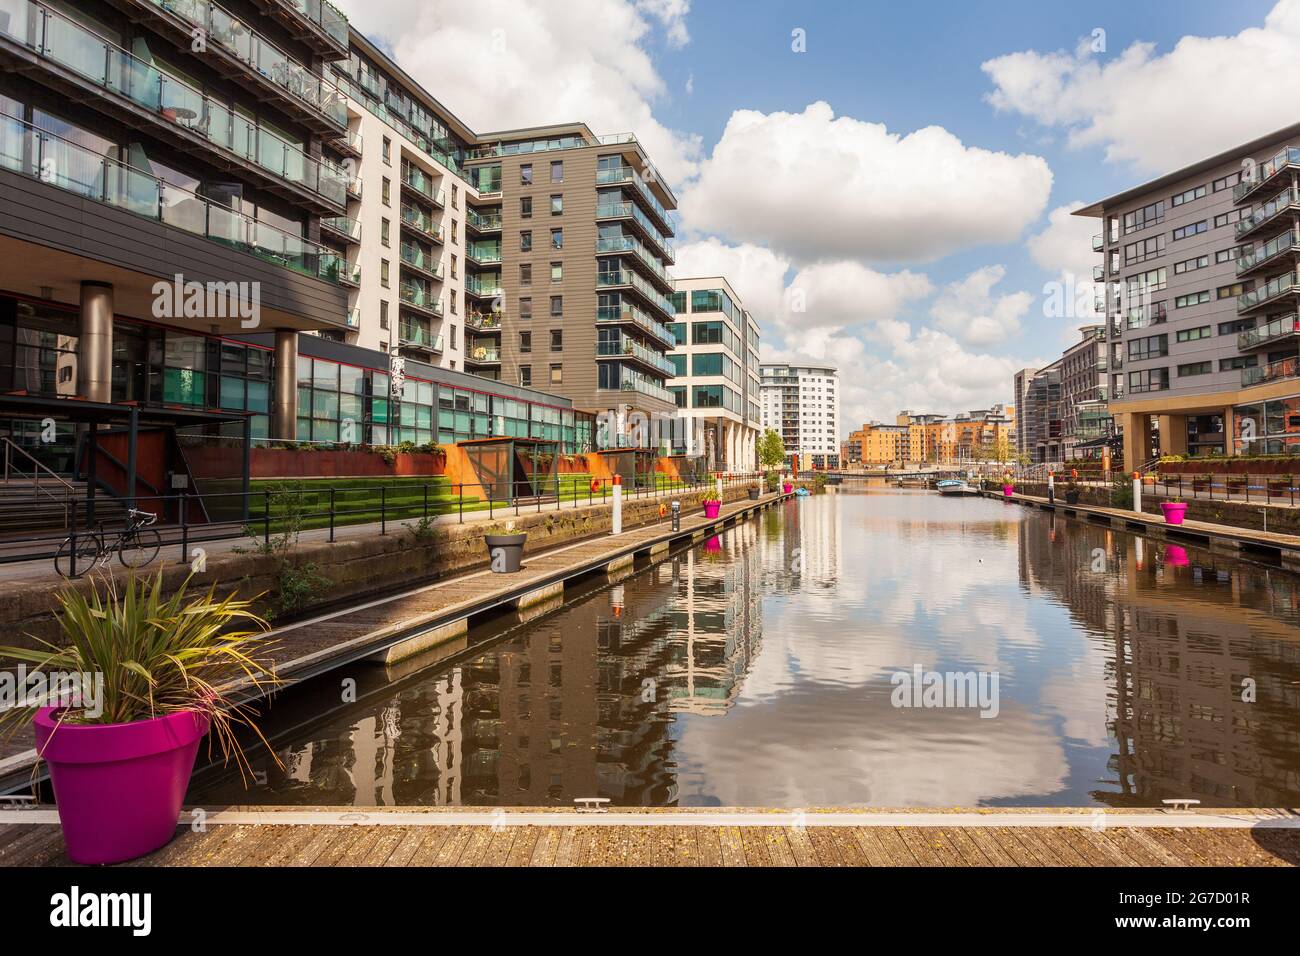 Leeds Dock, un développement mixte de propriétés résidentielles, commerciales et de bureaux autour des quais historiques du canal dans le centre de Leeds Banque D'Images